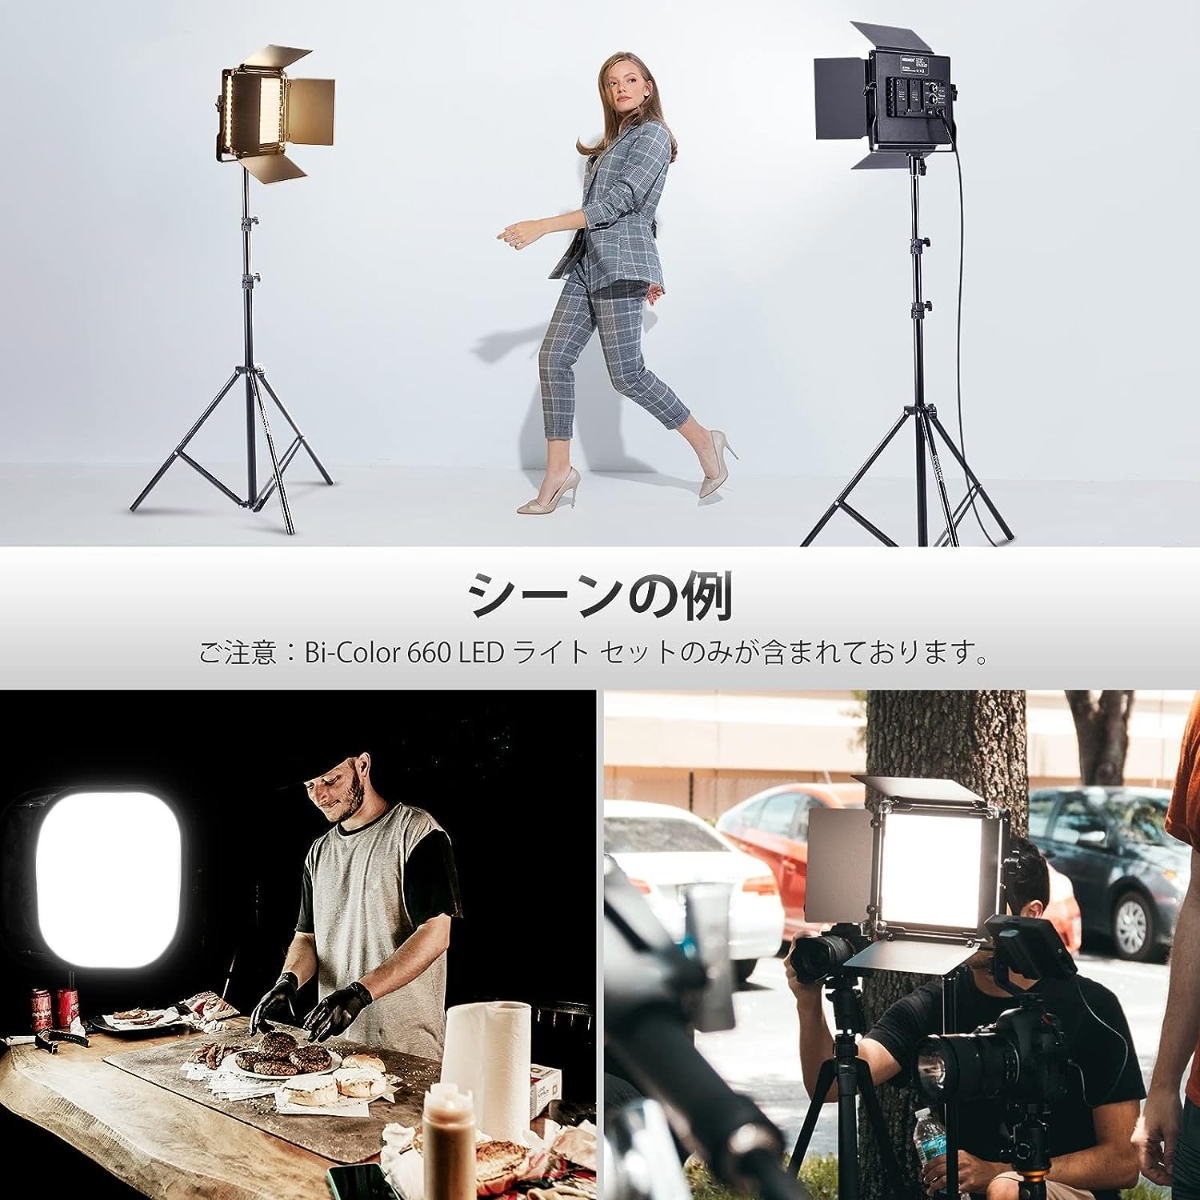 NEEWER JAPAN 公式サイト|プロ写真・撮影機材専門店. NEEWER 2パック 二色660 LEDビデオライトキット